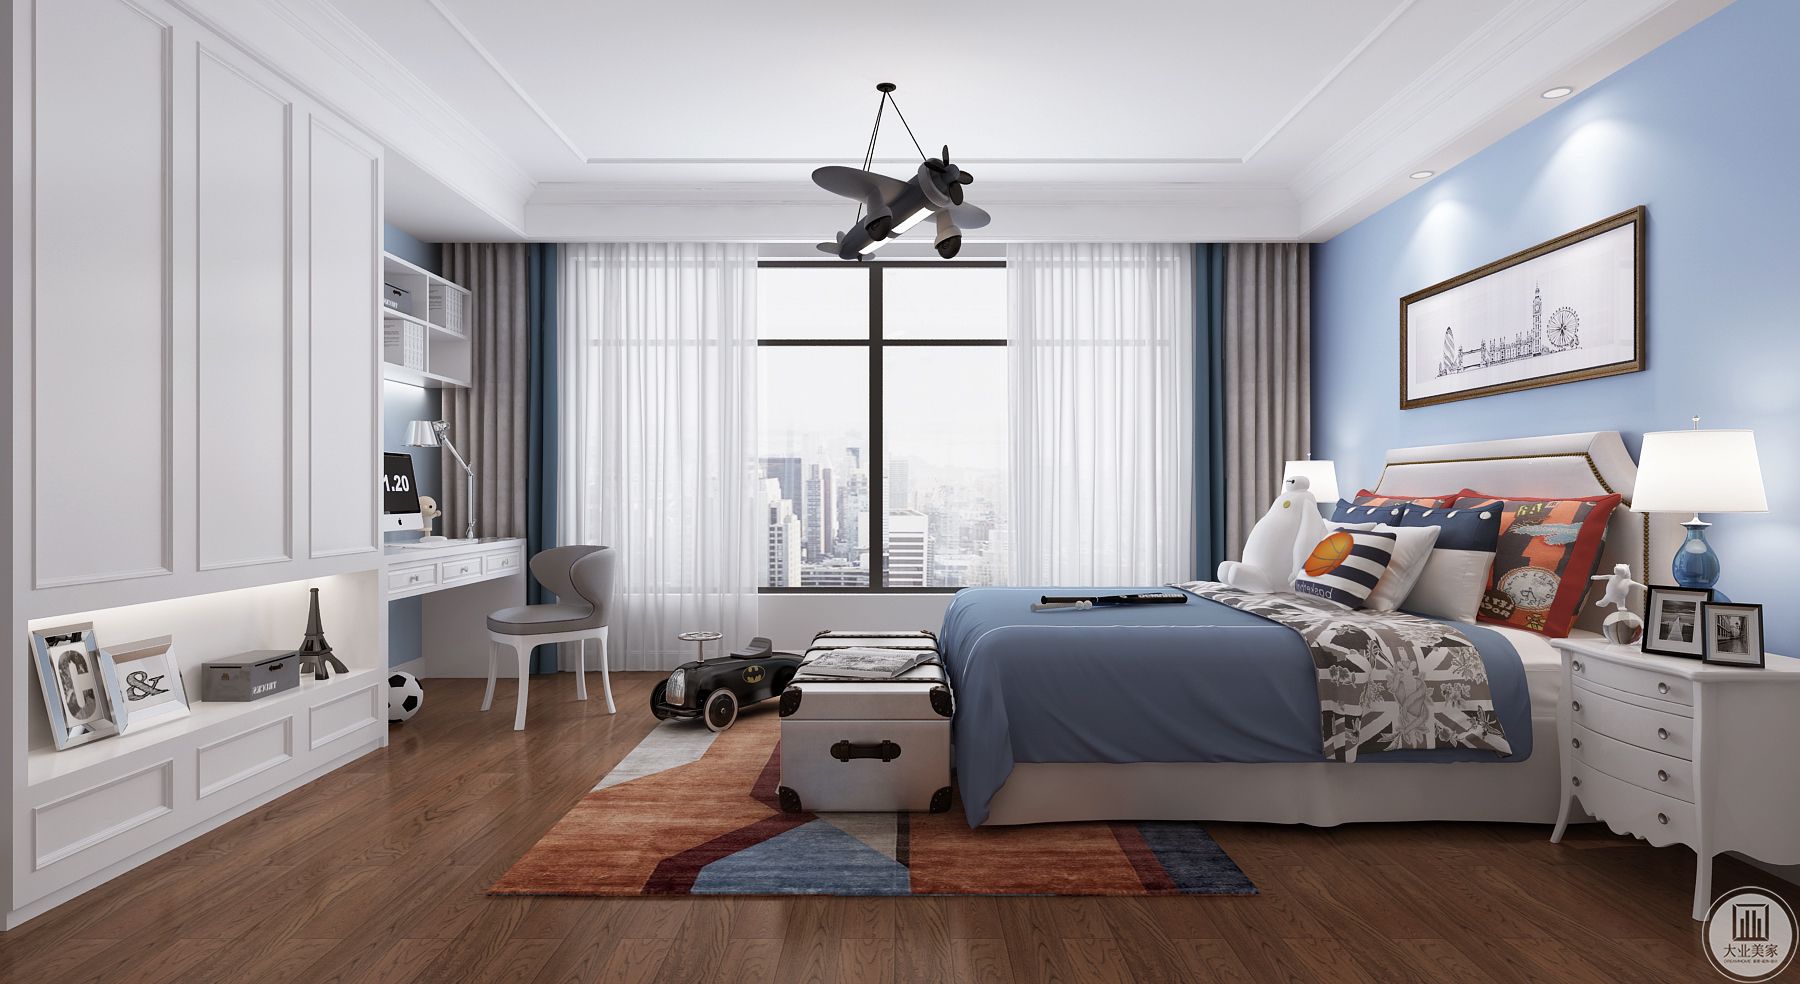 一层主卧使用深色的木质地板，上面铺着棕色和墨蓝色的拼块地毯。卧室在深木色和浅棕色的基础上添加了亮蓝色和墨蓝色点缀，使空间既有奢侈感又富有年轻气息。 